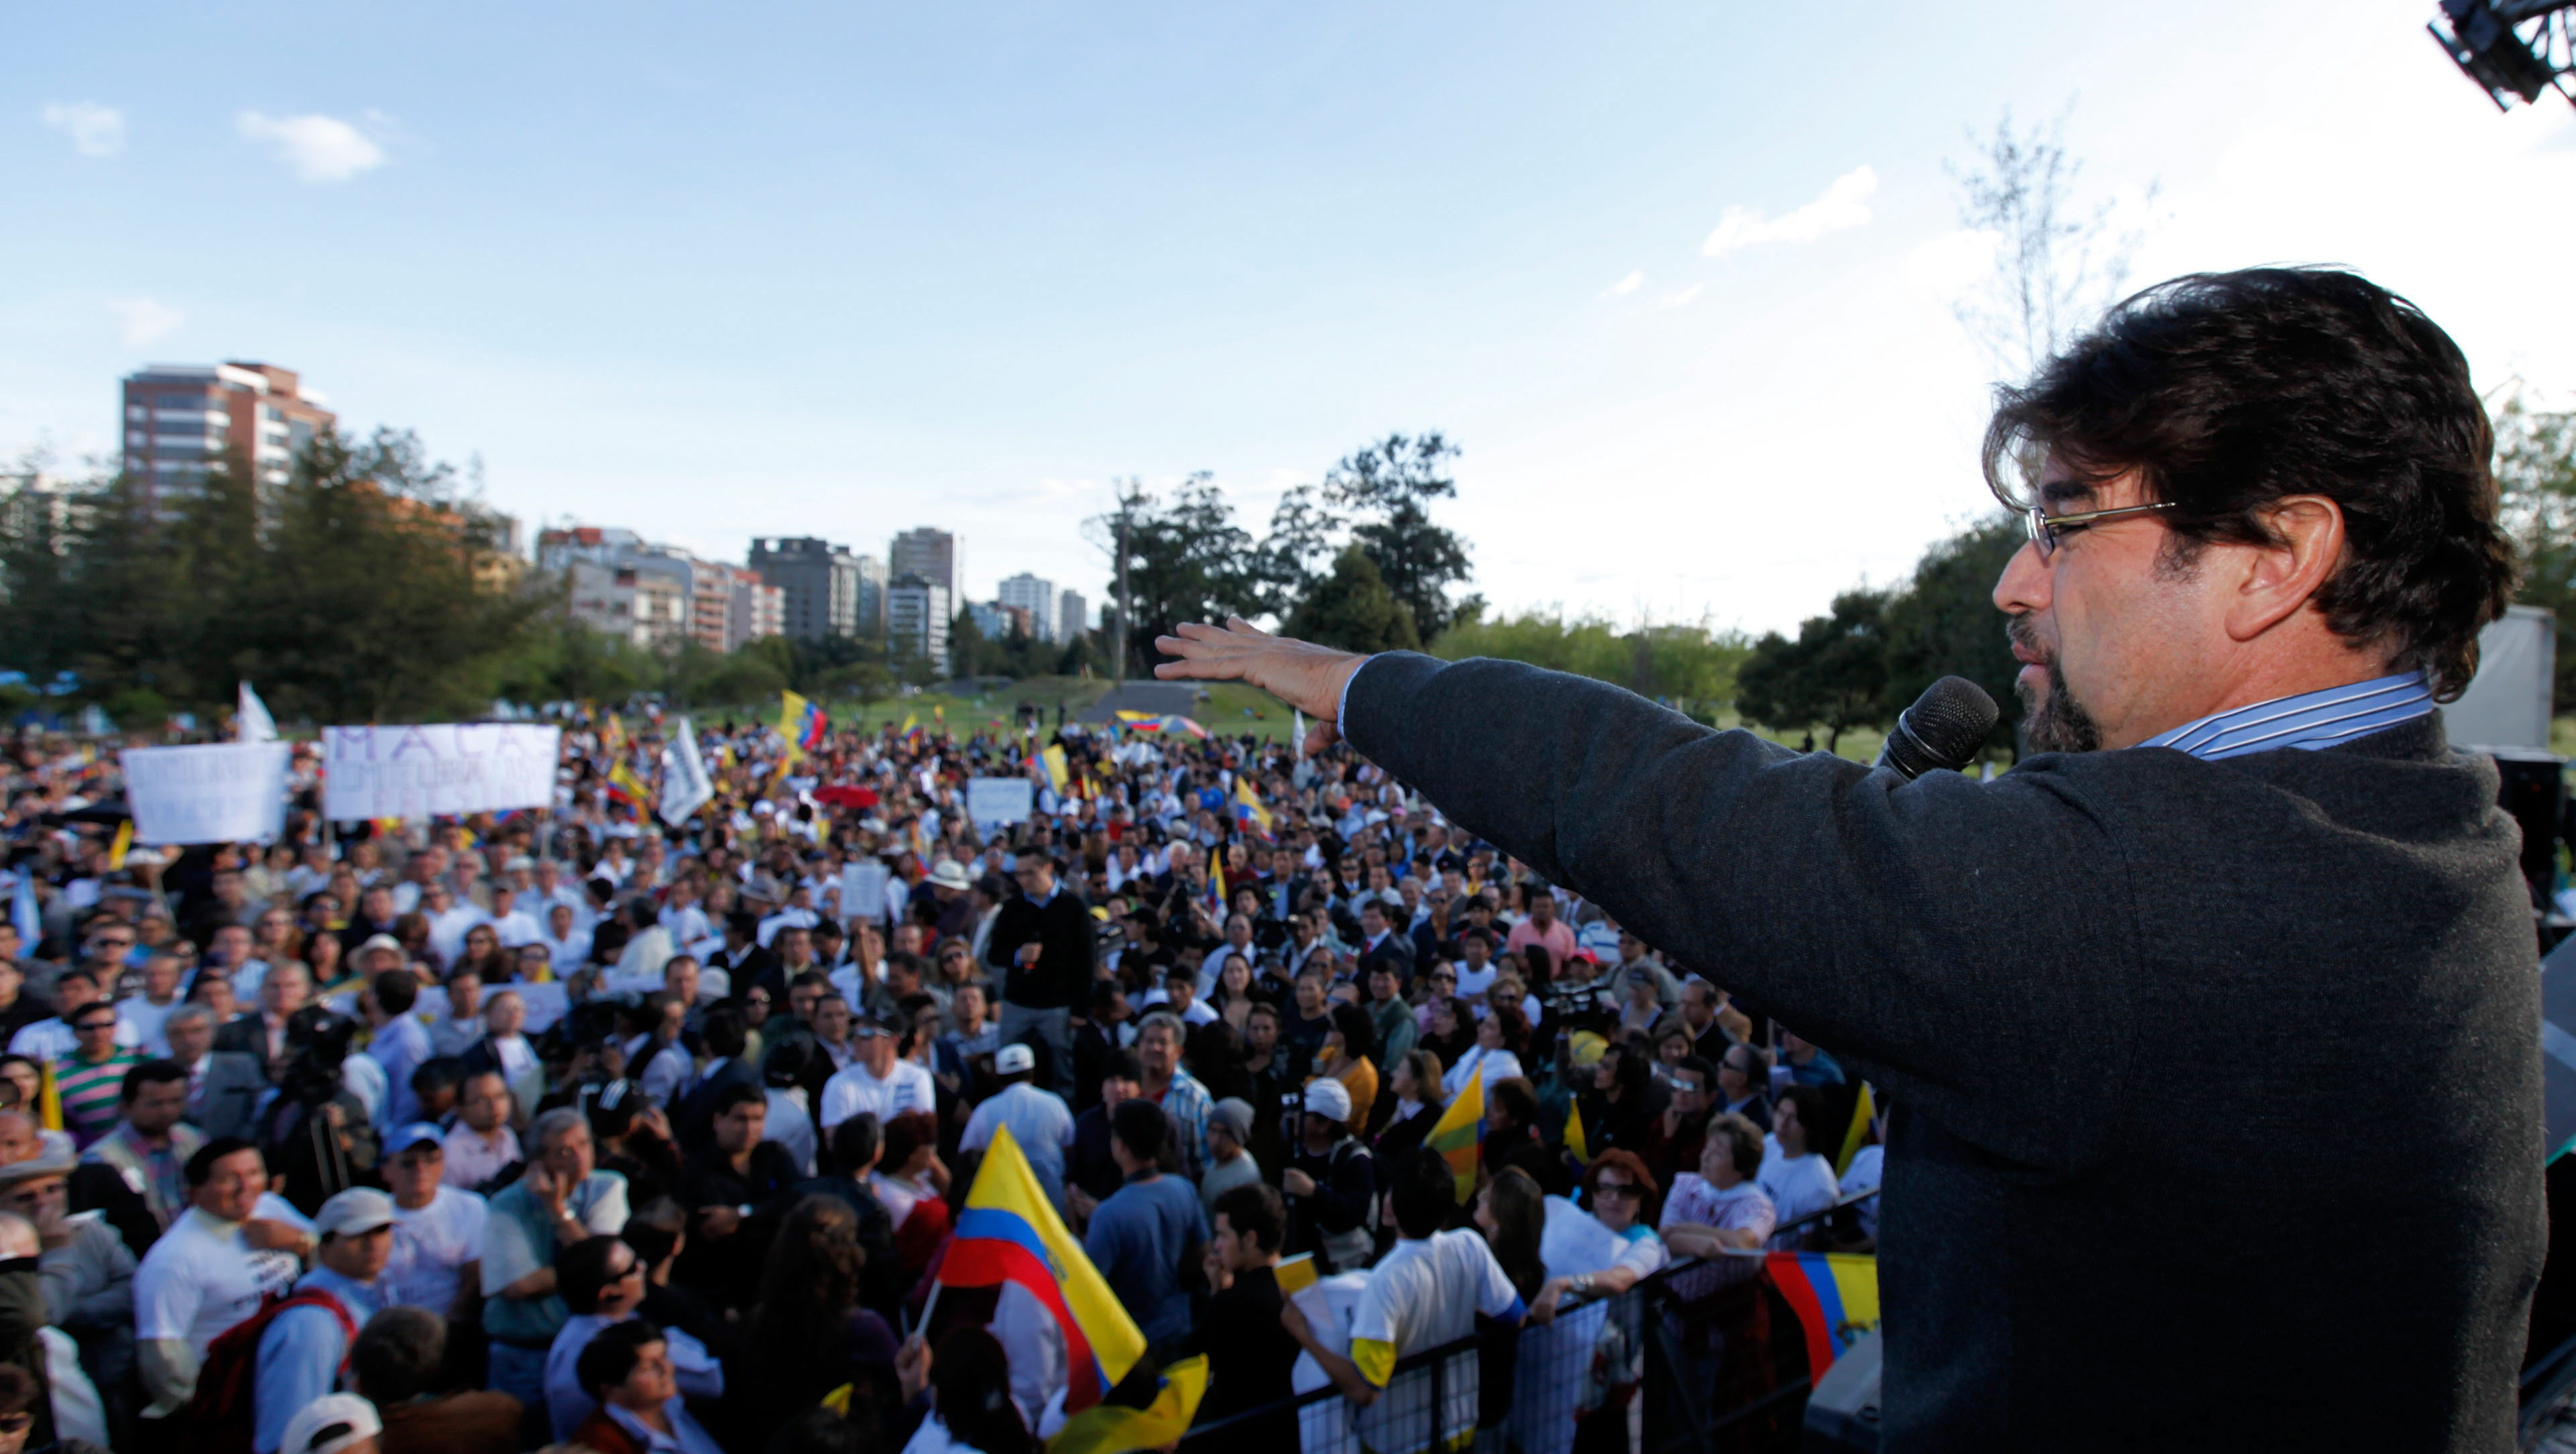 Opositores acusan al Gobierno de Ecuador de criminalizar la protesta social, a pesar de que tienen potestad de concentrarse y marchar pacíficamente.